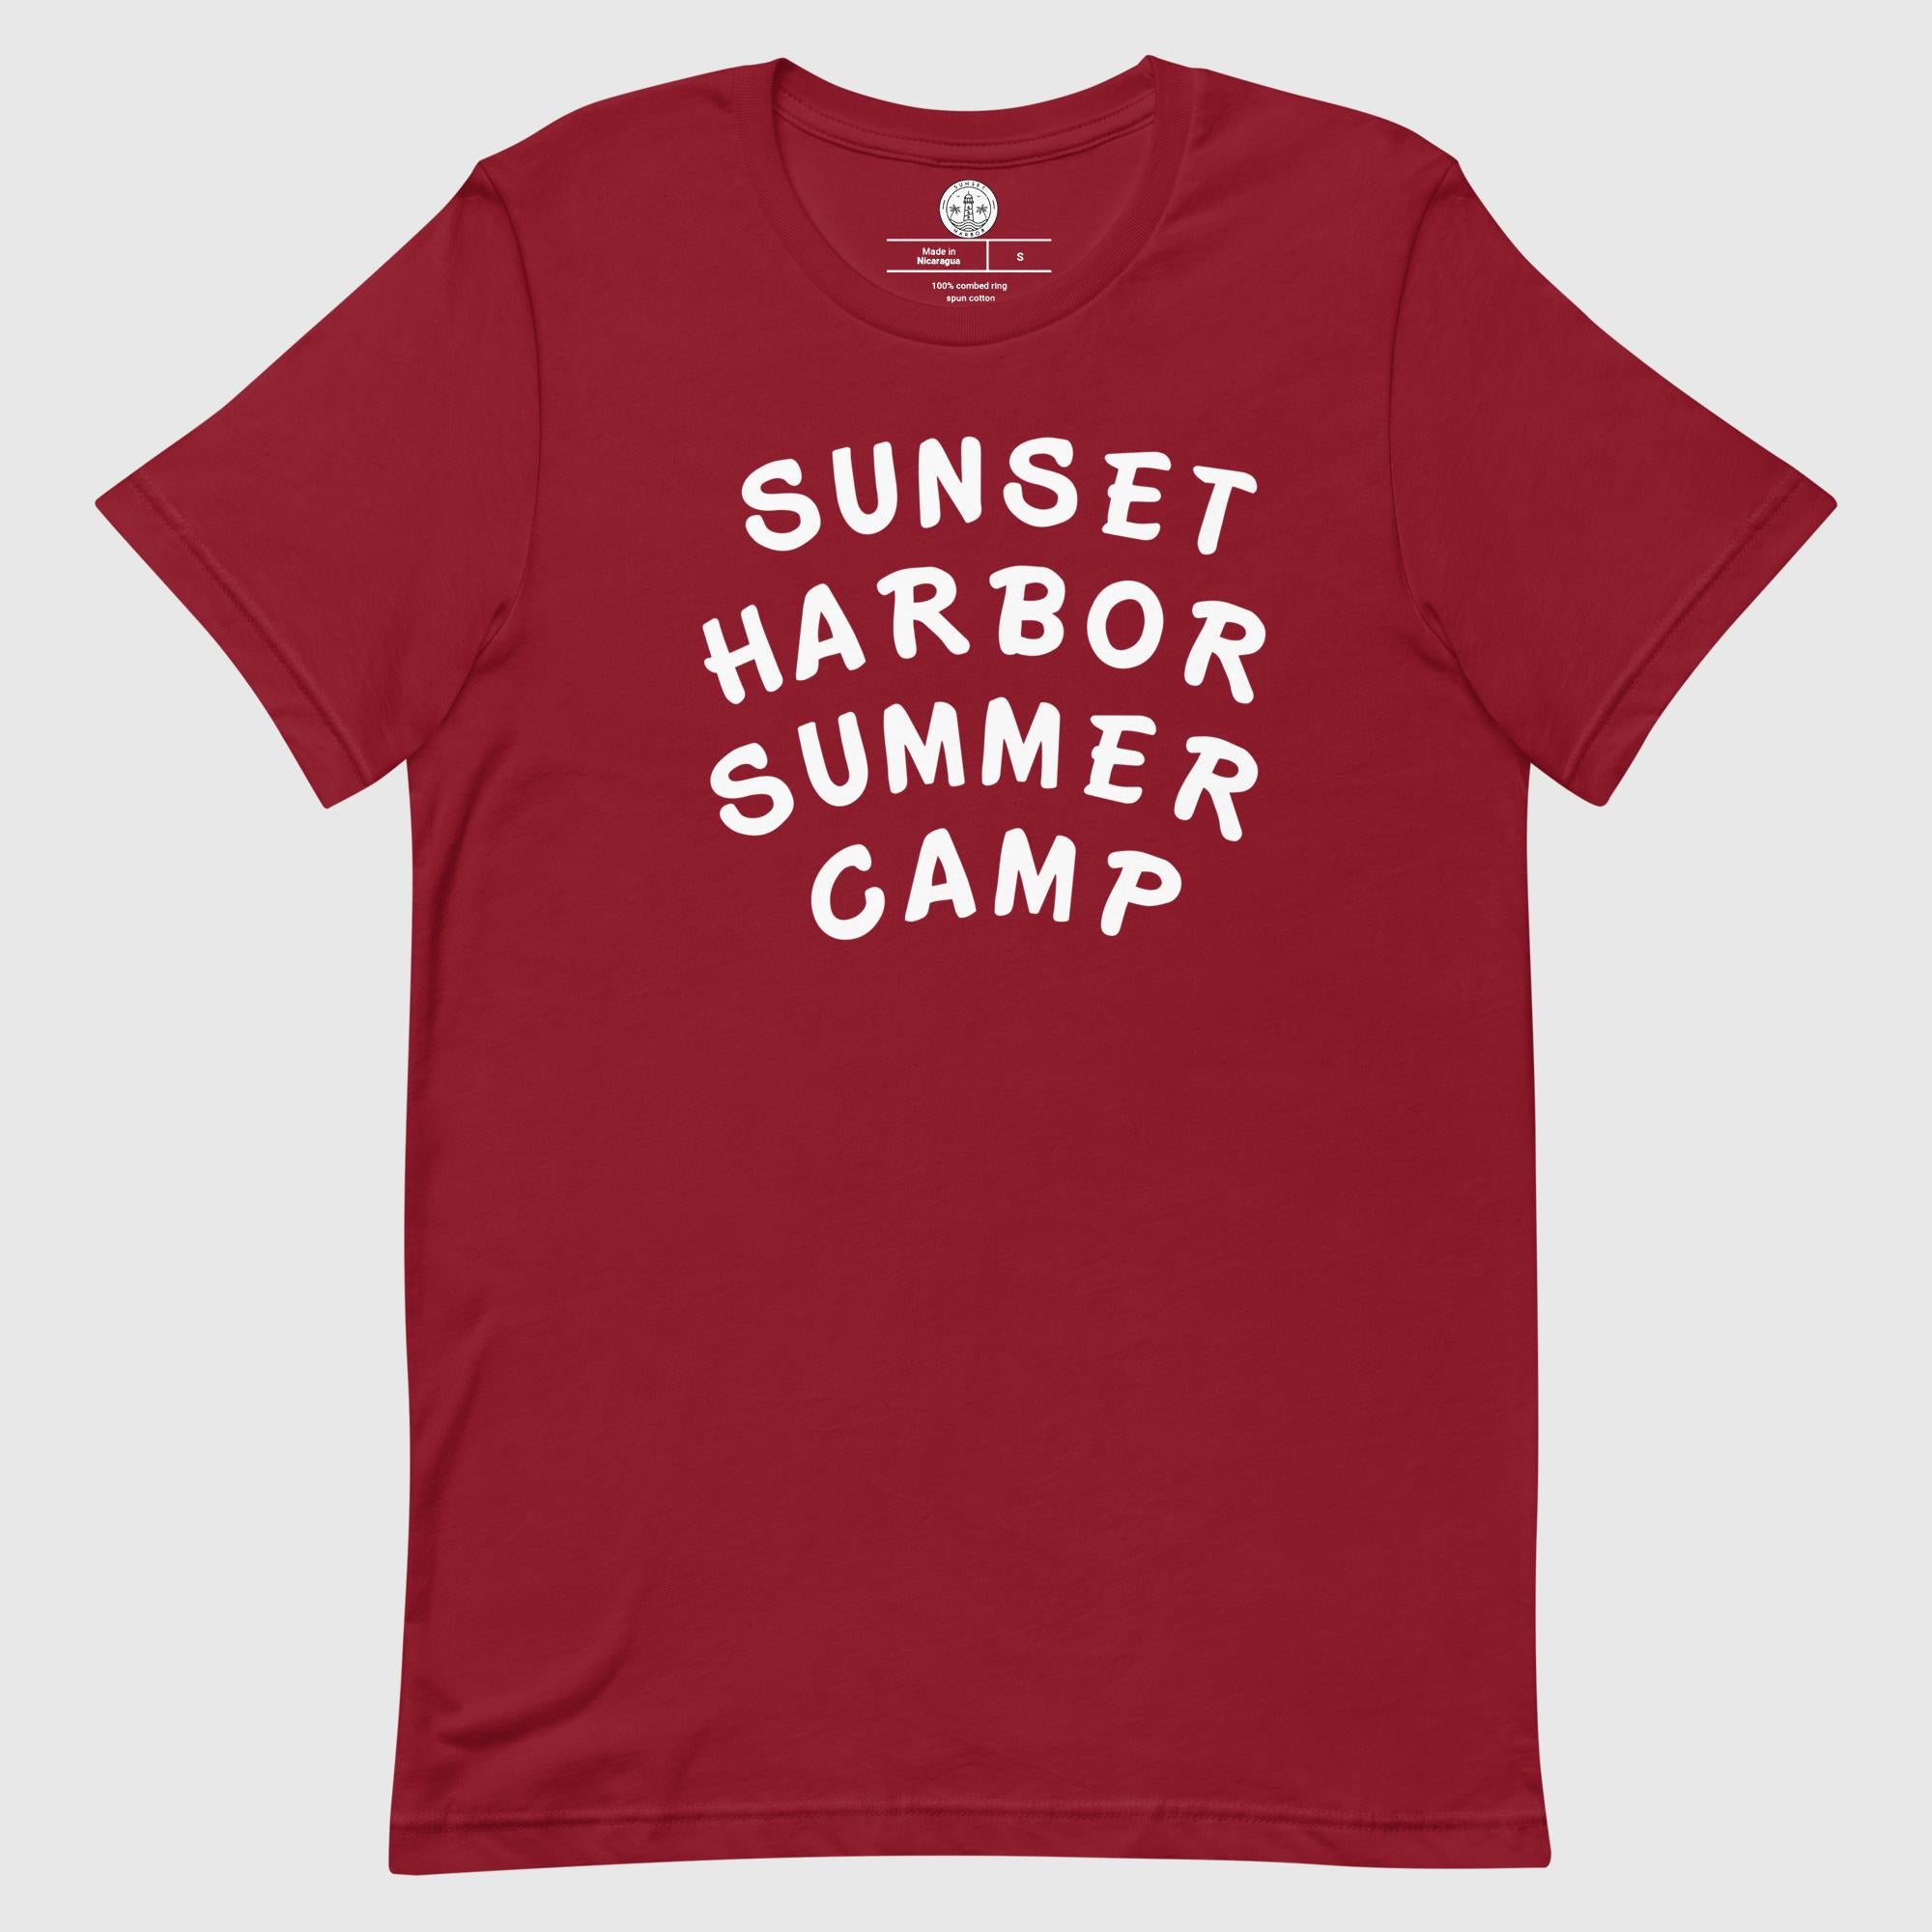 Camiseta unisex - Campamento